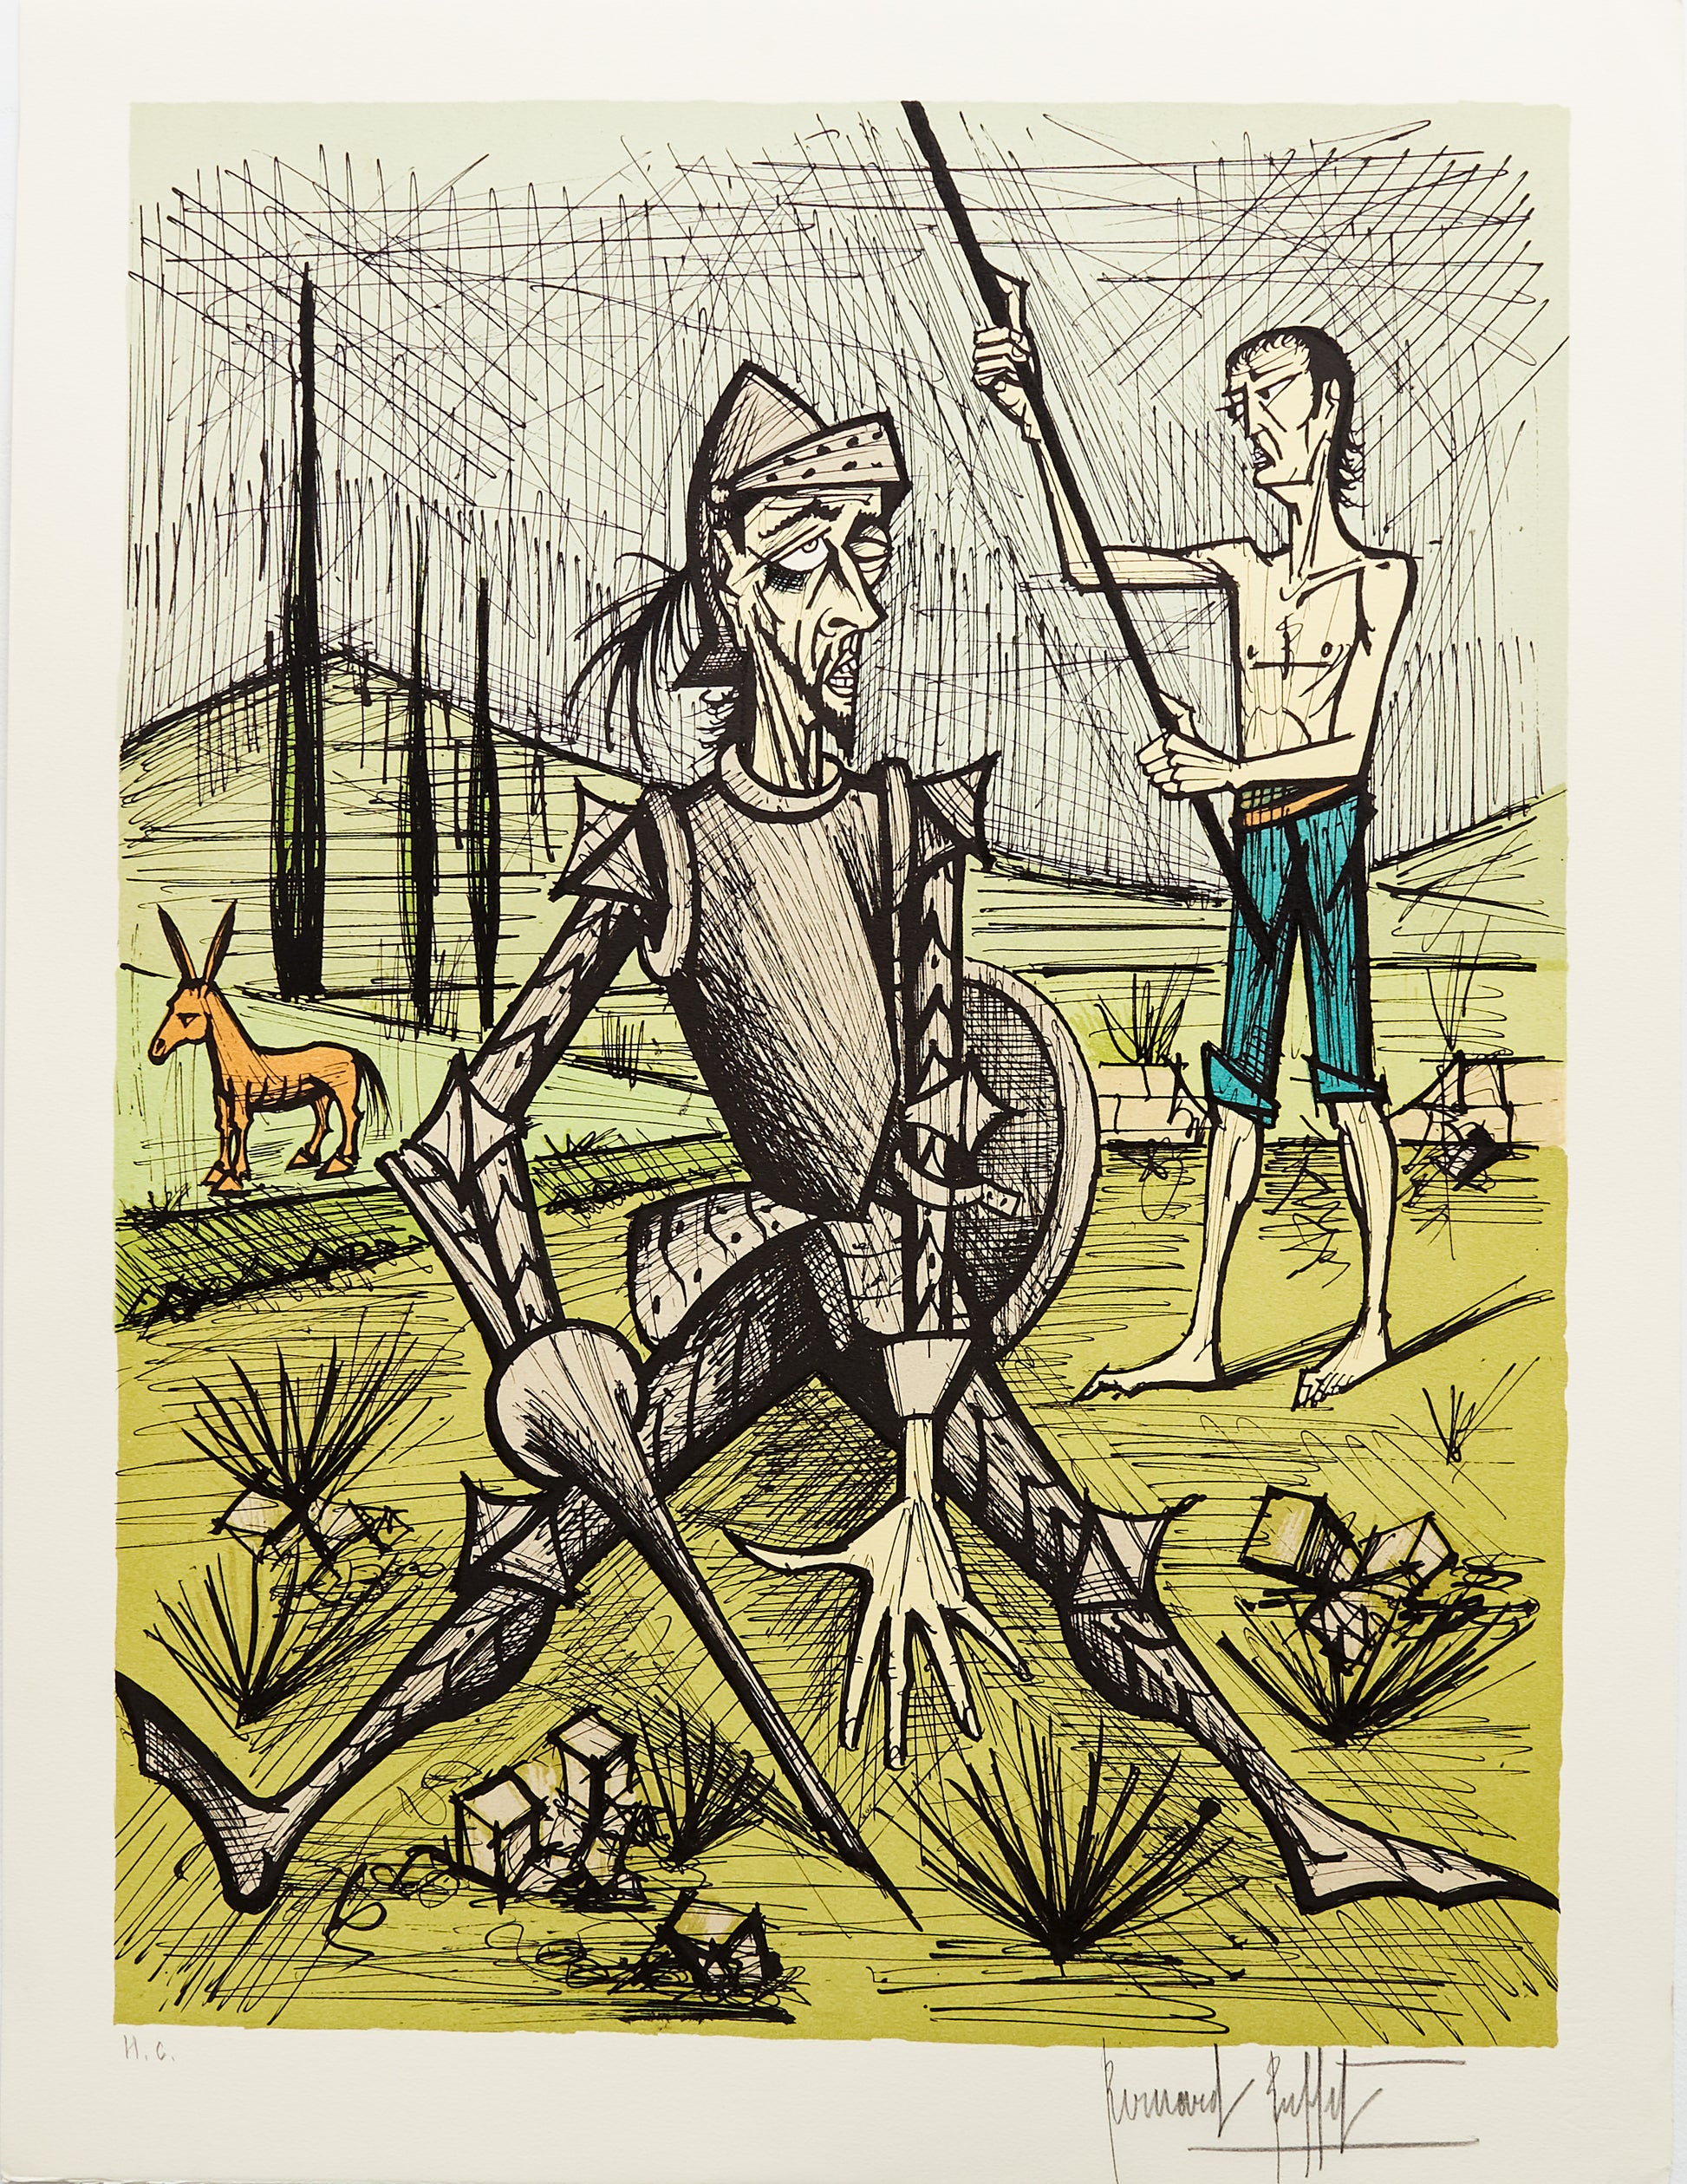 La Rencontre Avec Les Muletiers IV - Don Quichotte by Bernard Buffet, 1989 - Mourlot Editions - Fine_Art - Poster - Lithograph - Wall Art - Vintage - Prints - Original